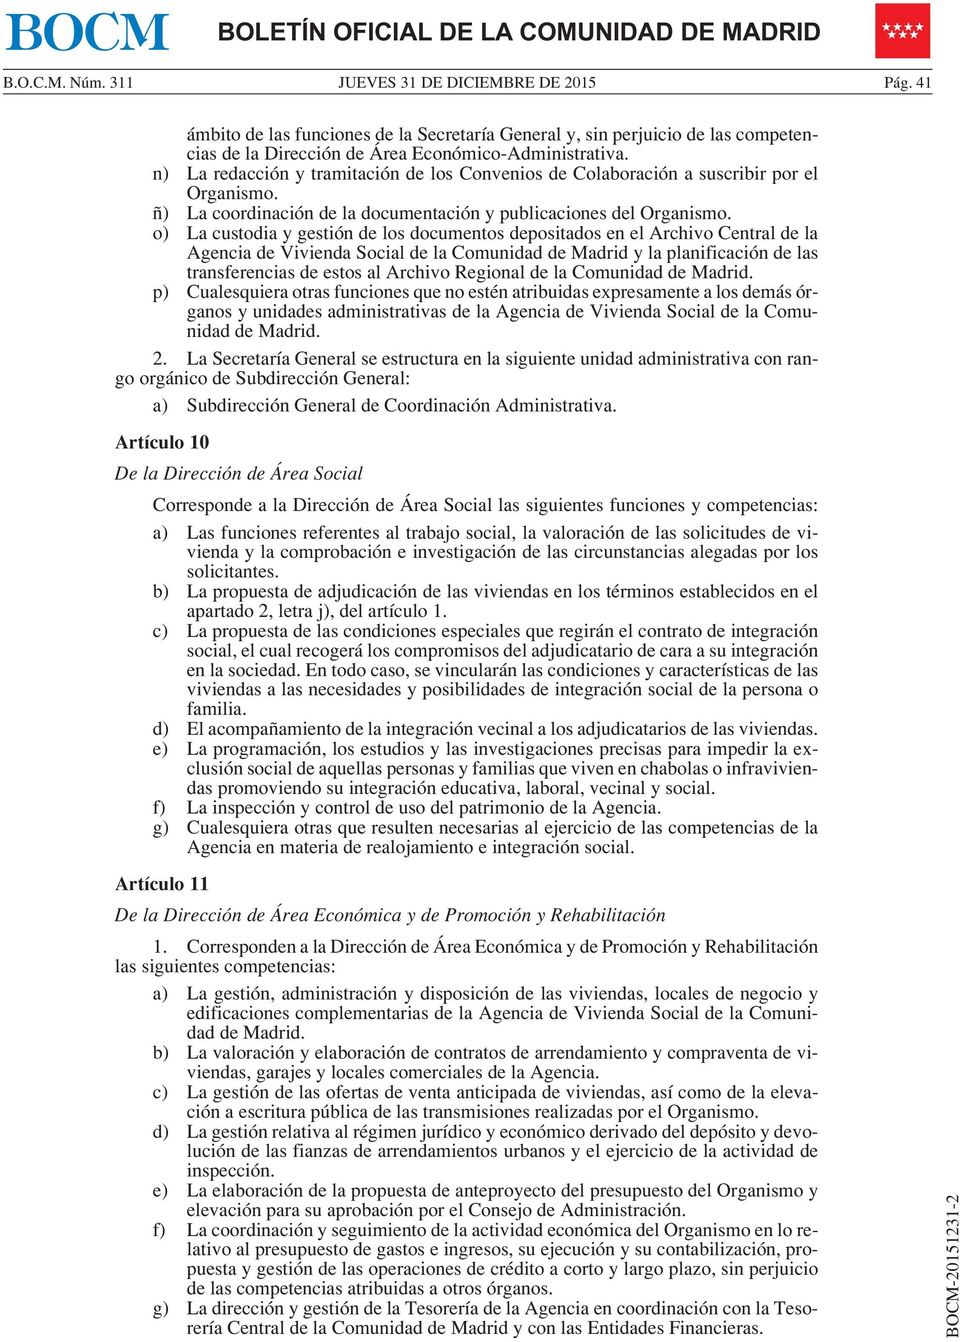 o) La custodia y gestión de los documentos depositados en el Archivo Central de la Agencia de Vivienda Social de la Comunidad de Madrid y la planificación de las transferencias de estos al Archivo